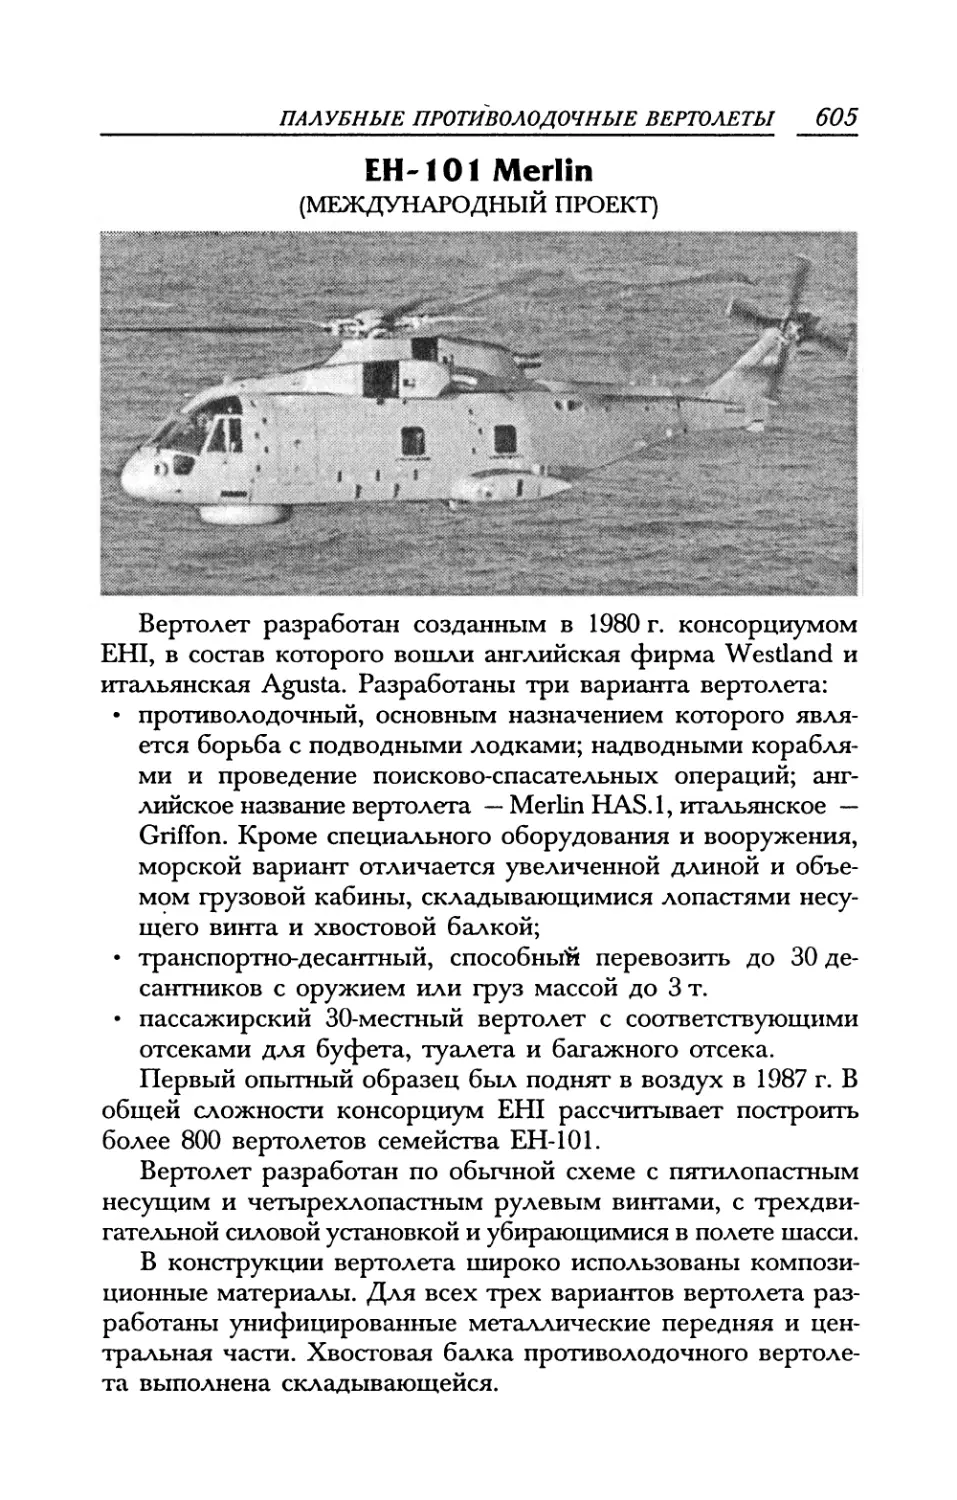 EH-101 Merlin